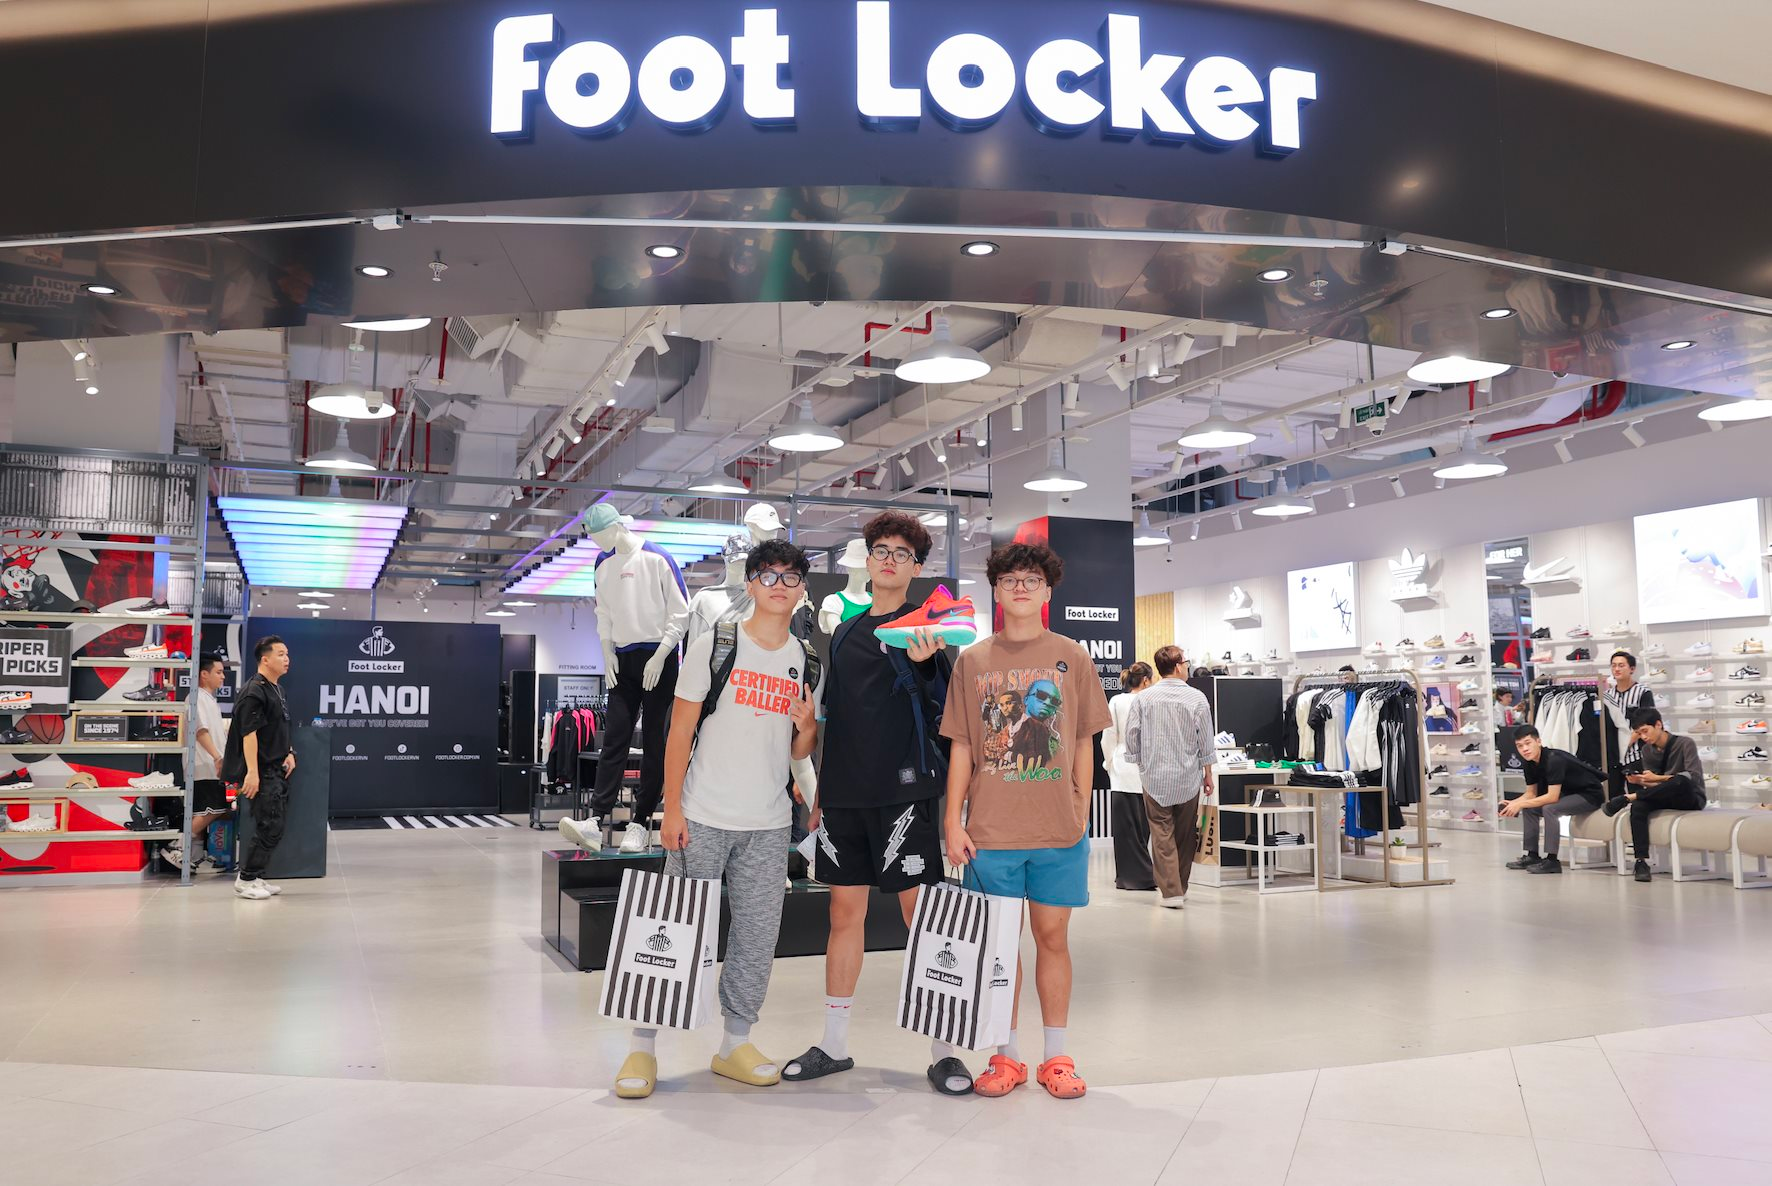 Nhà bán lẻ sneaker hàng hiệu Foot Locker chính thức đến Việt Nam, chọn Hà Nội làm nơi đặt chân thay vì TPHCM - Ảnh 2.